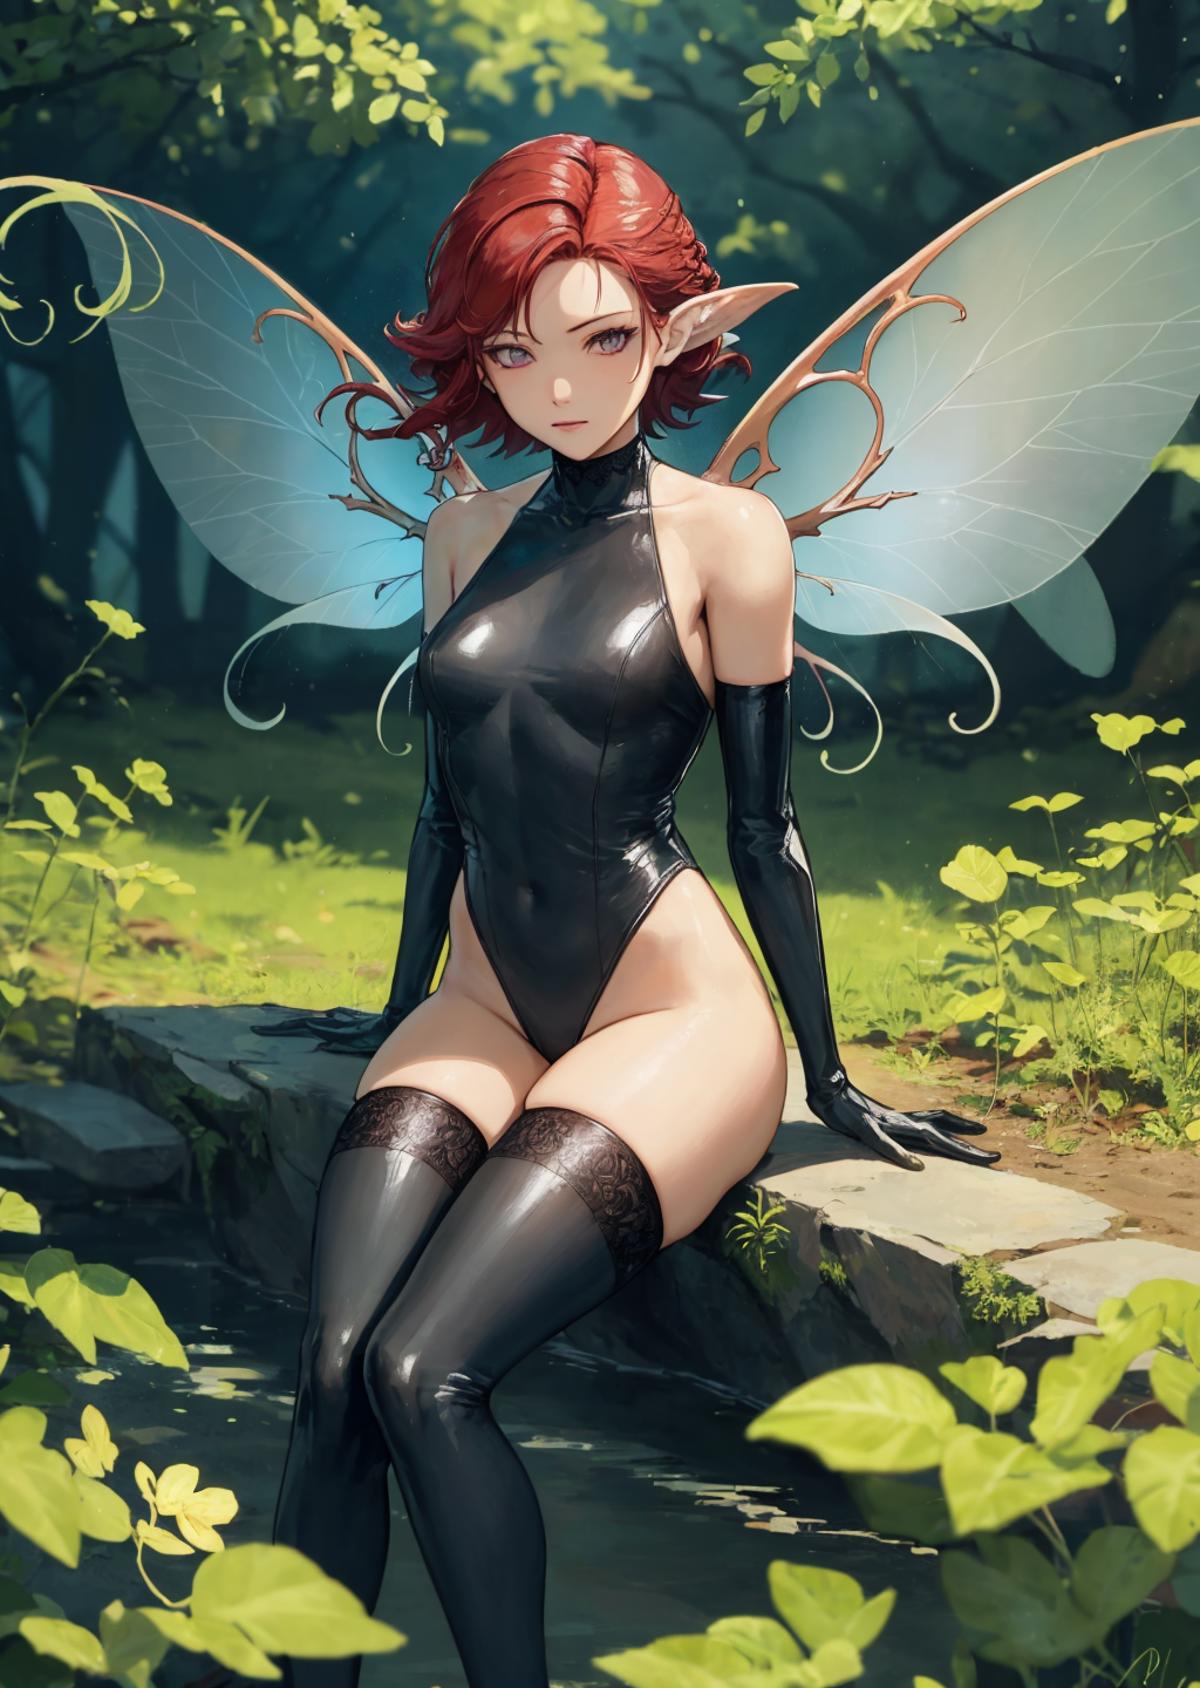 Fairy Pixie - Shin Megami Tensei image by EstelleBright4SMASH